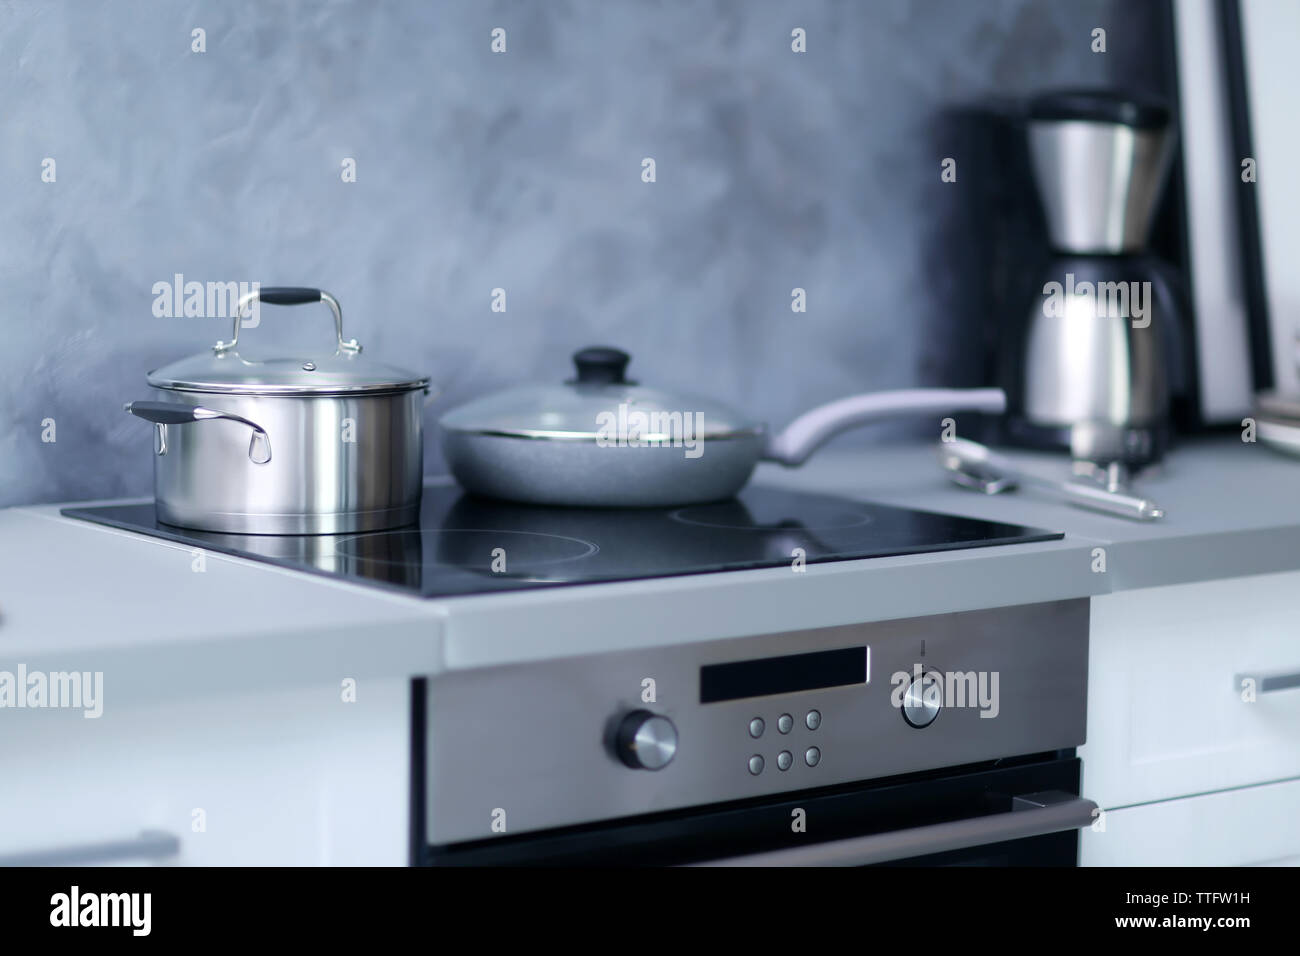 Moderne elektrische Herd mit Utensilien in der Küche Stockfotografie - Alamy